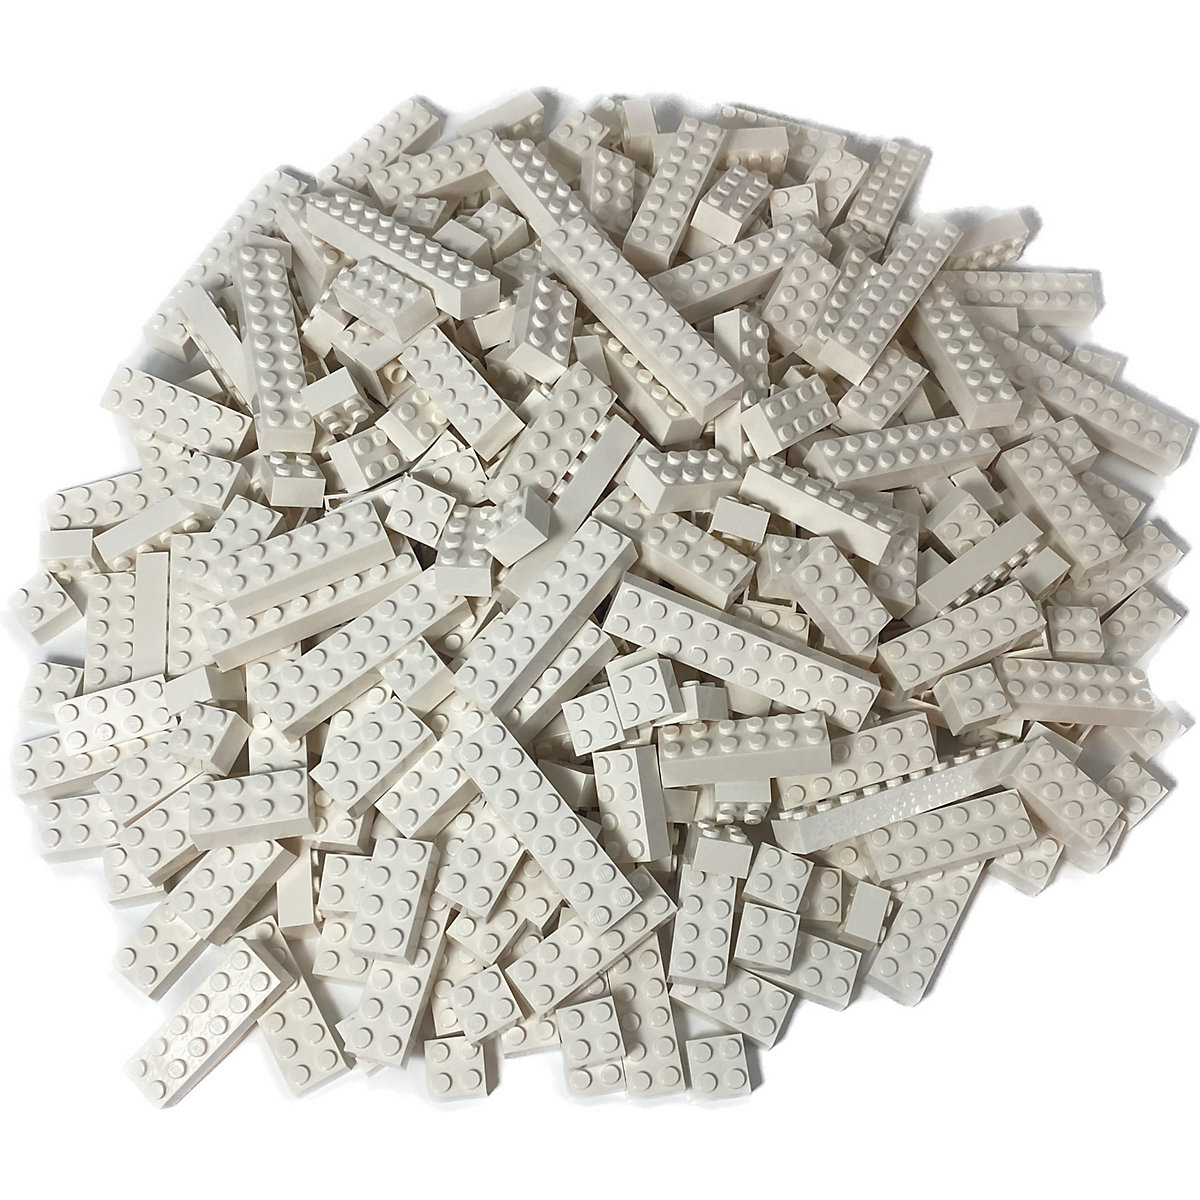 LEGO® Bausteine Weiß 2x2 2x4 2x6 NEU! Menge 250x